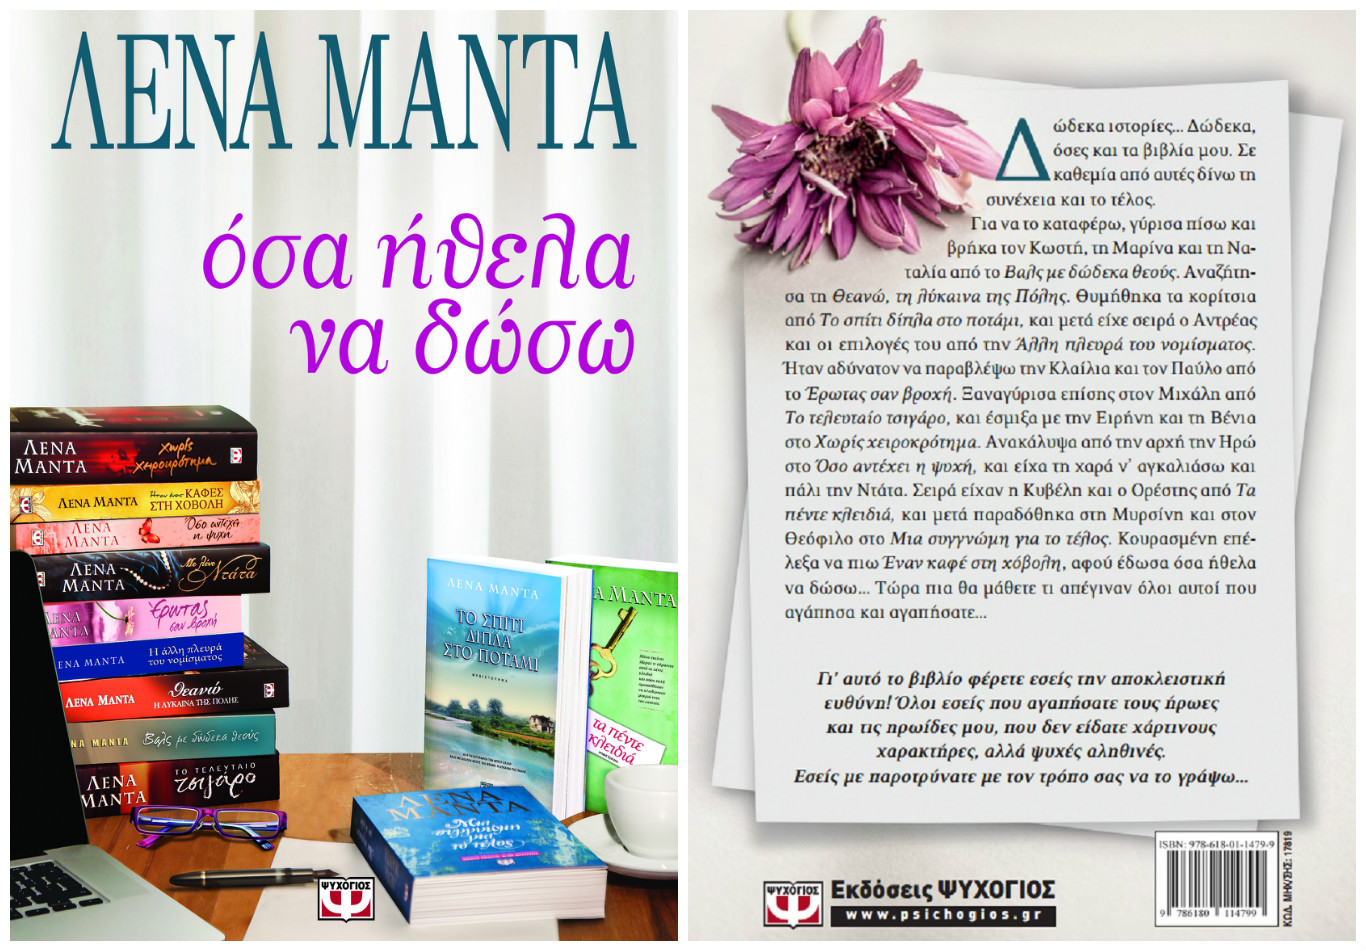 Ξεφυλλίστε και κερδίστε το νέο βιβλίο της Λένας Μαντά «Όσα ήθελα να δώσω»